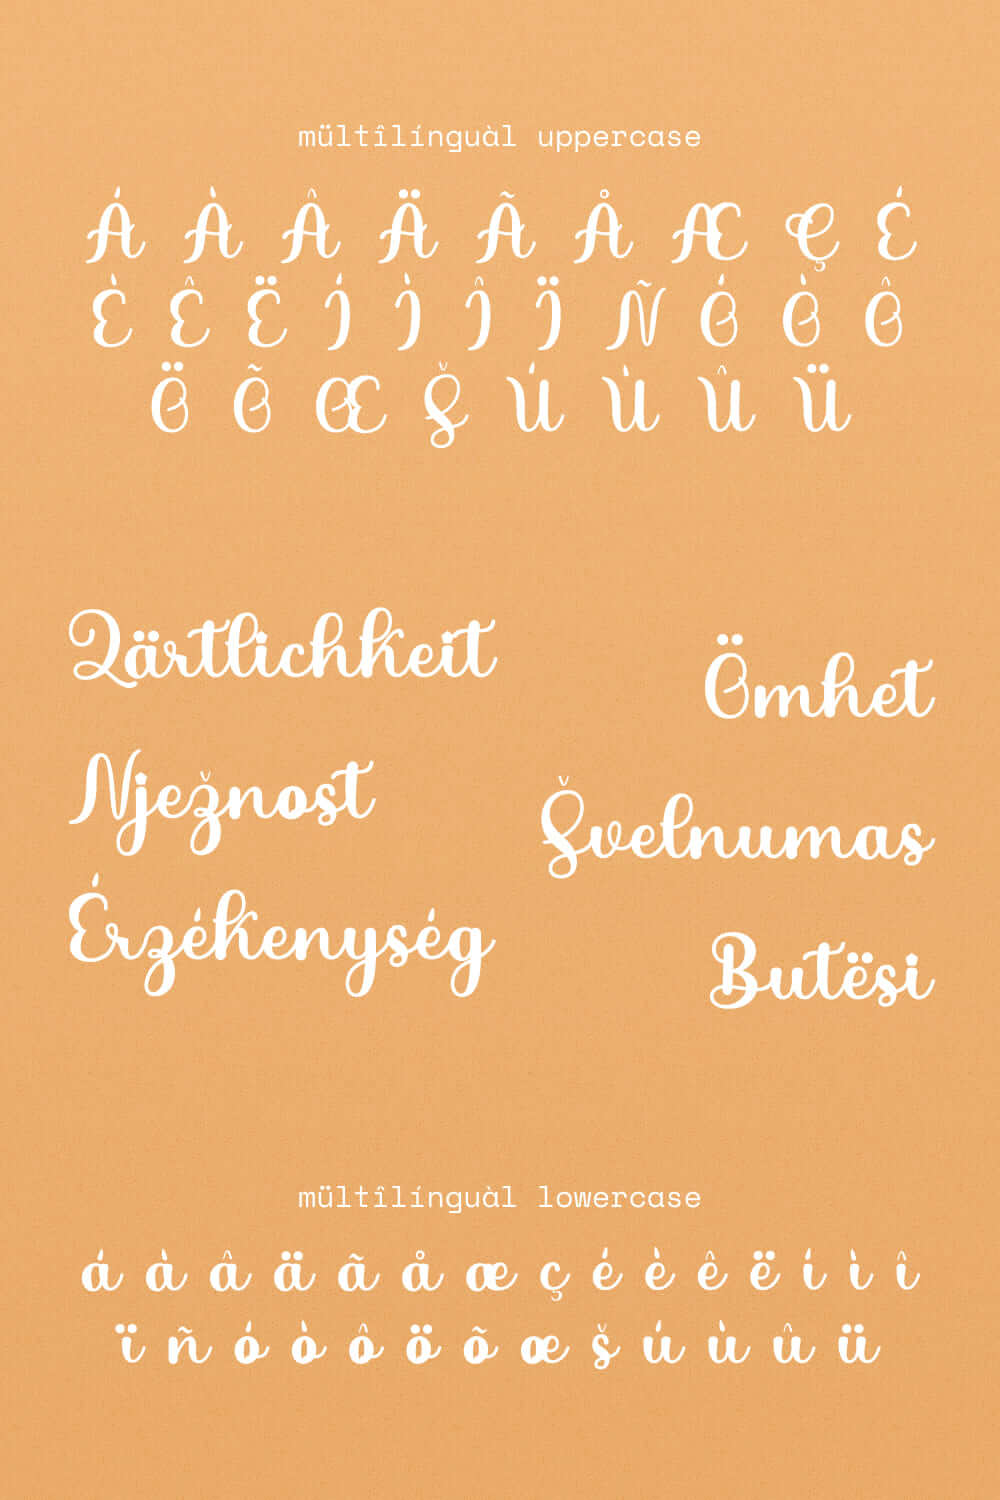 mogaloa modern and stylish calligraphy font.